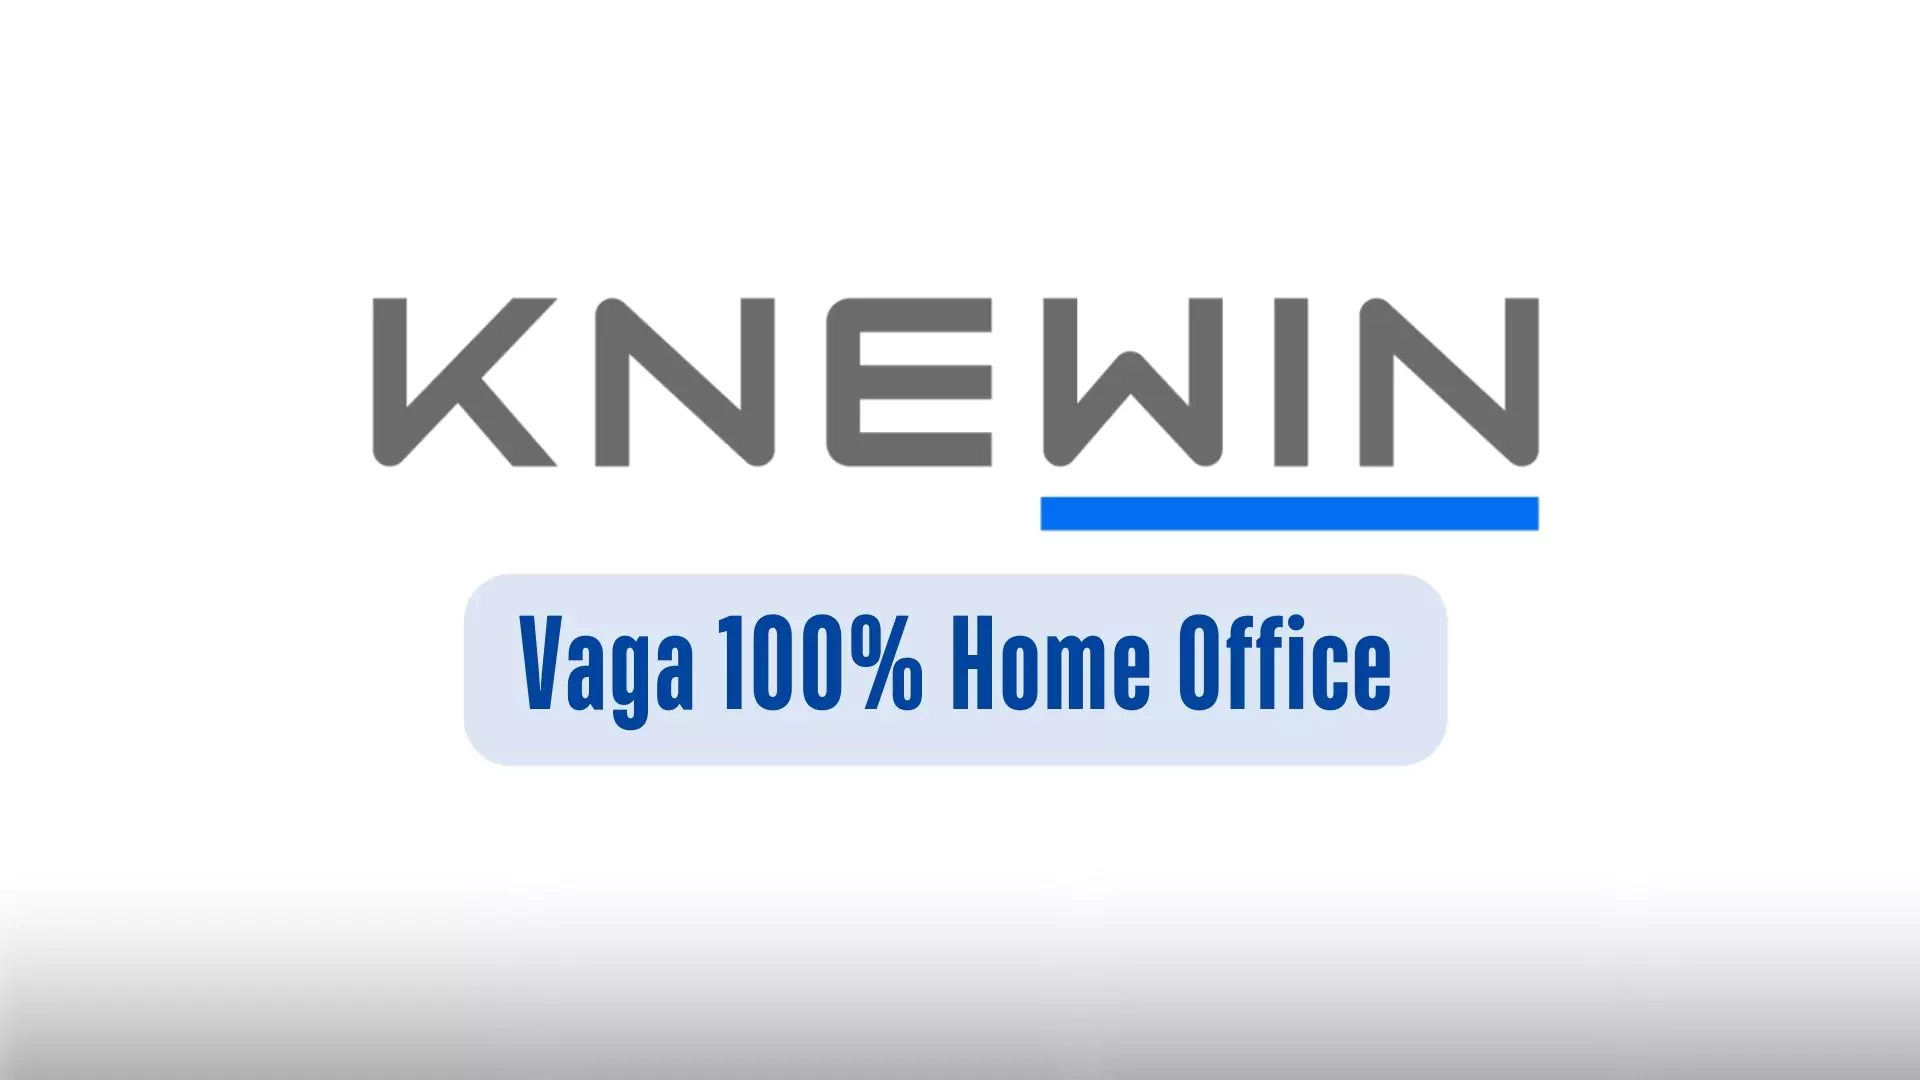 VAGA PARA ANALISTA NA KNEWIN 100% HOME OFFICE, ASSISTENTE DE OPERAÇÕES JR: Vaga 100% Remoto na Knewin com Auxílio Home Office